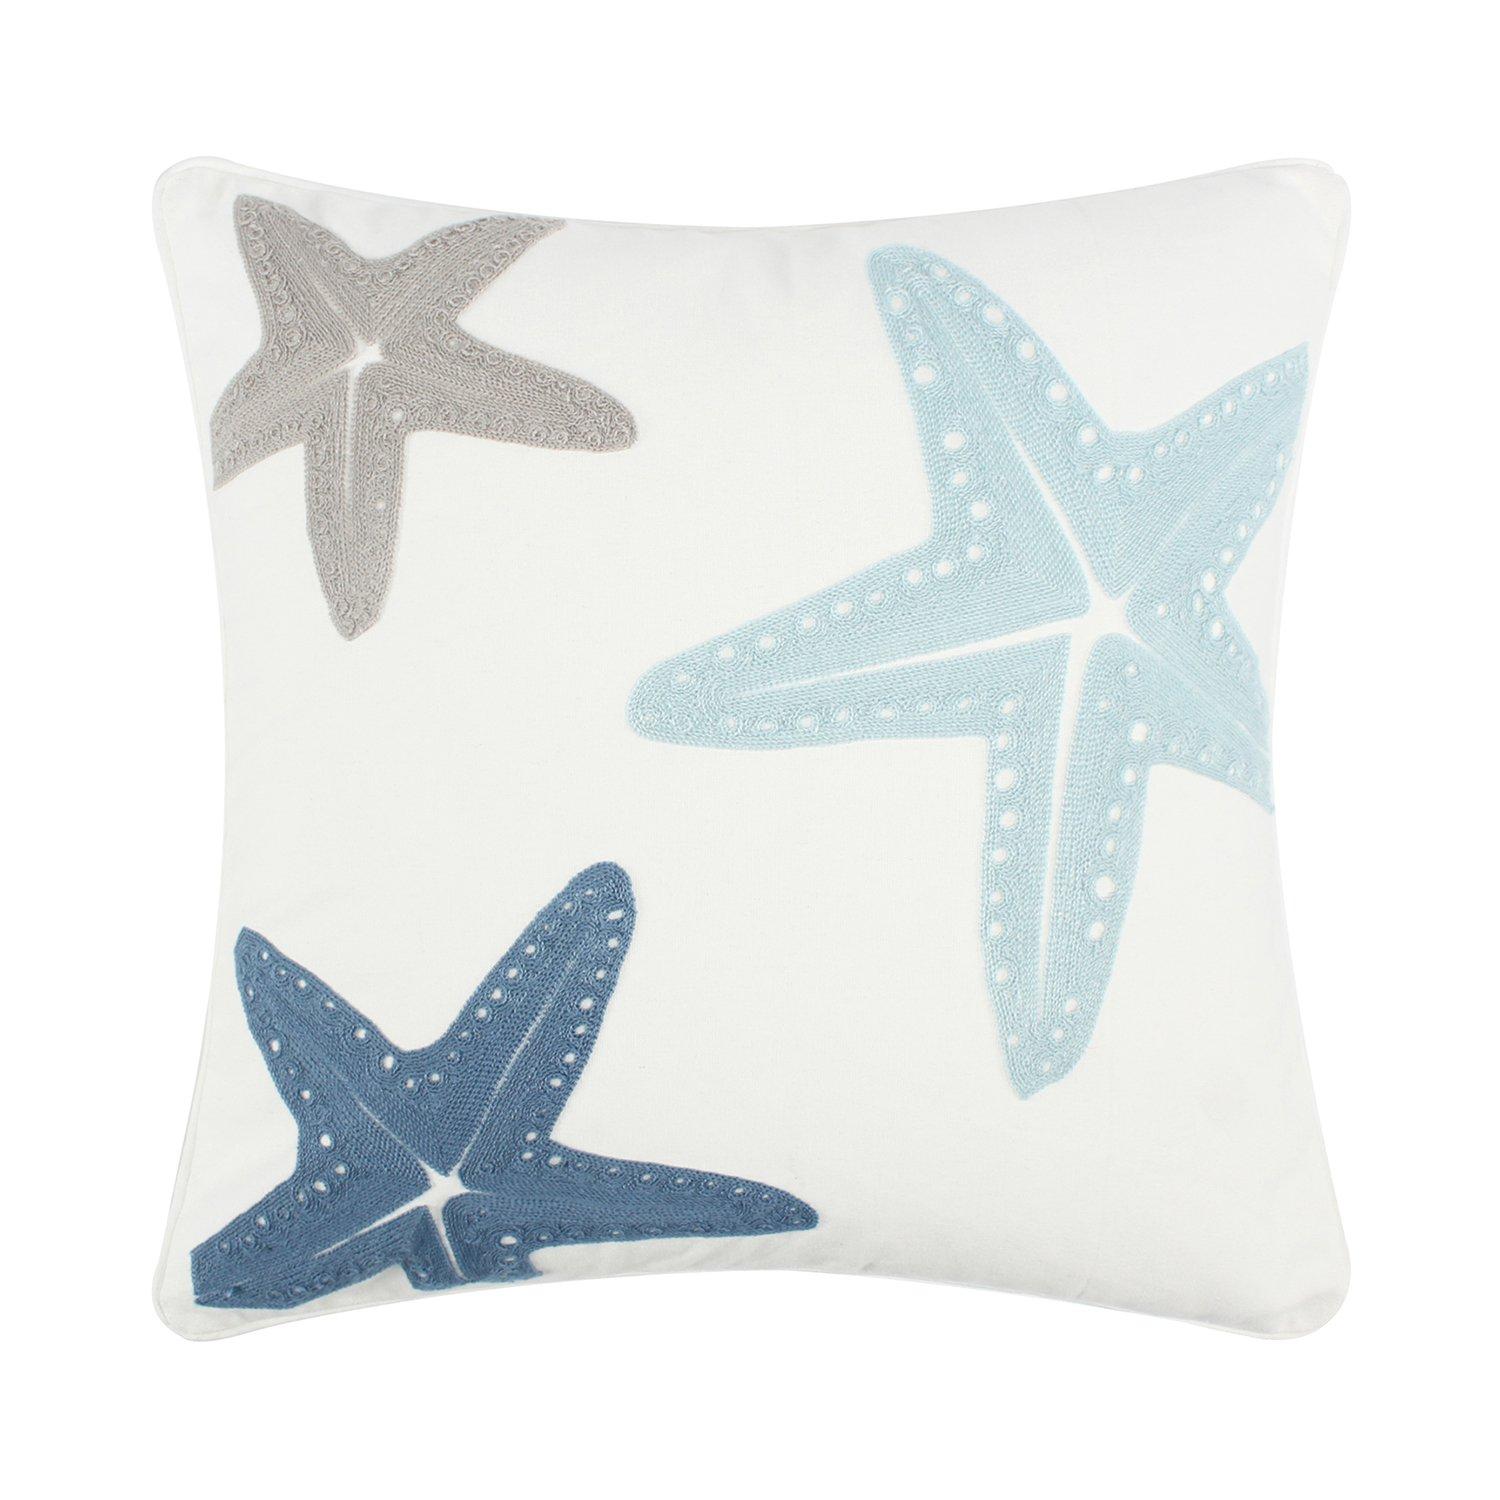 Coastal Home 20x20 Star Fish Pattern Decorative Pillow